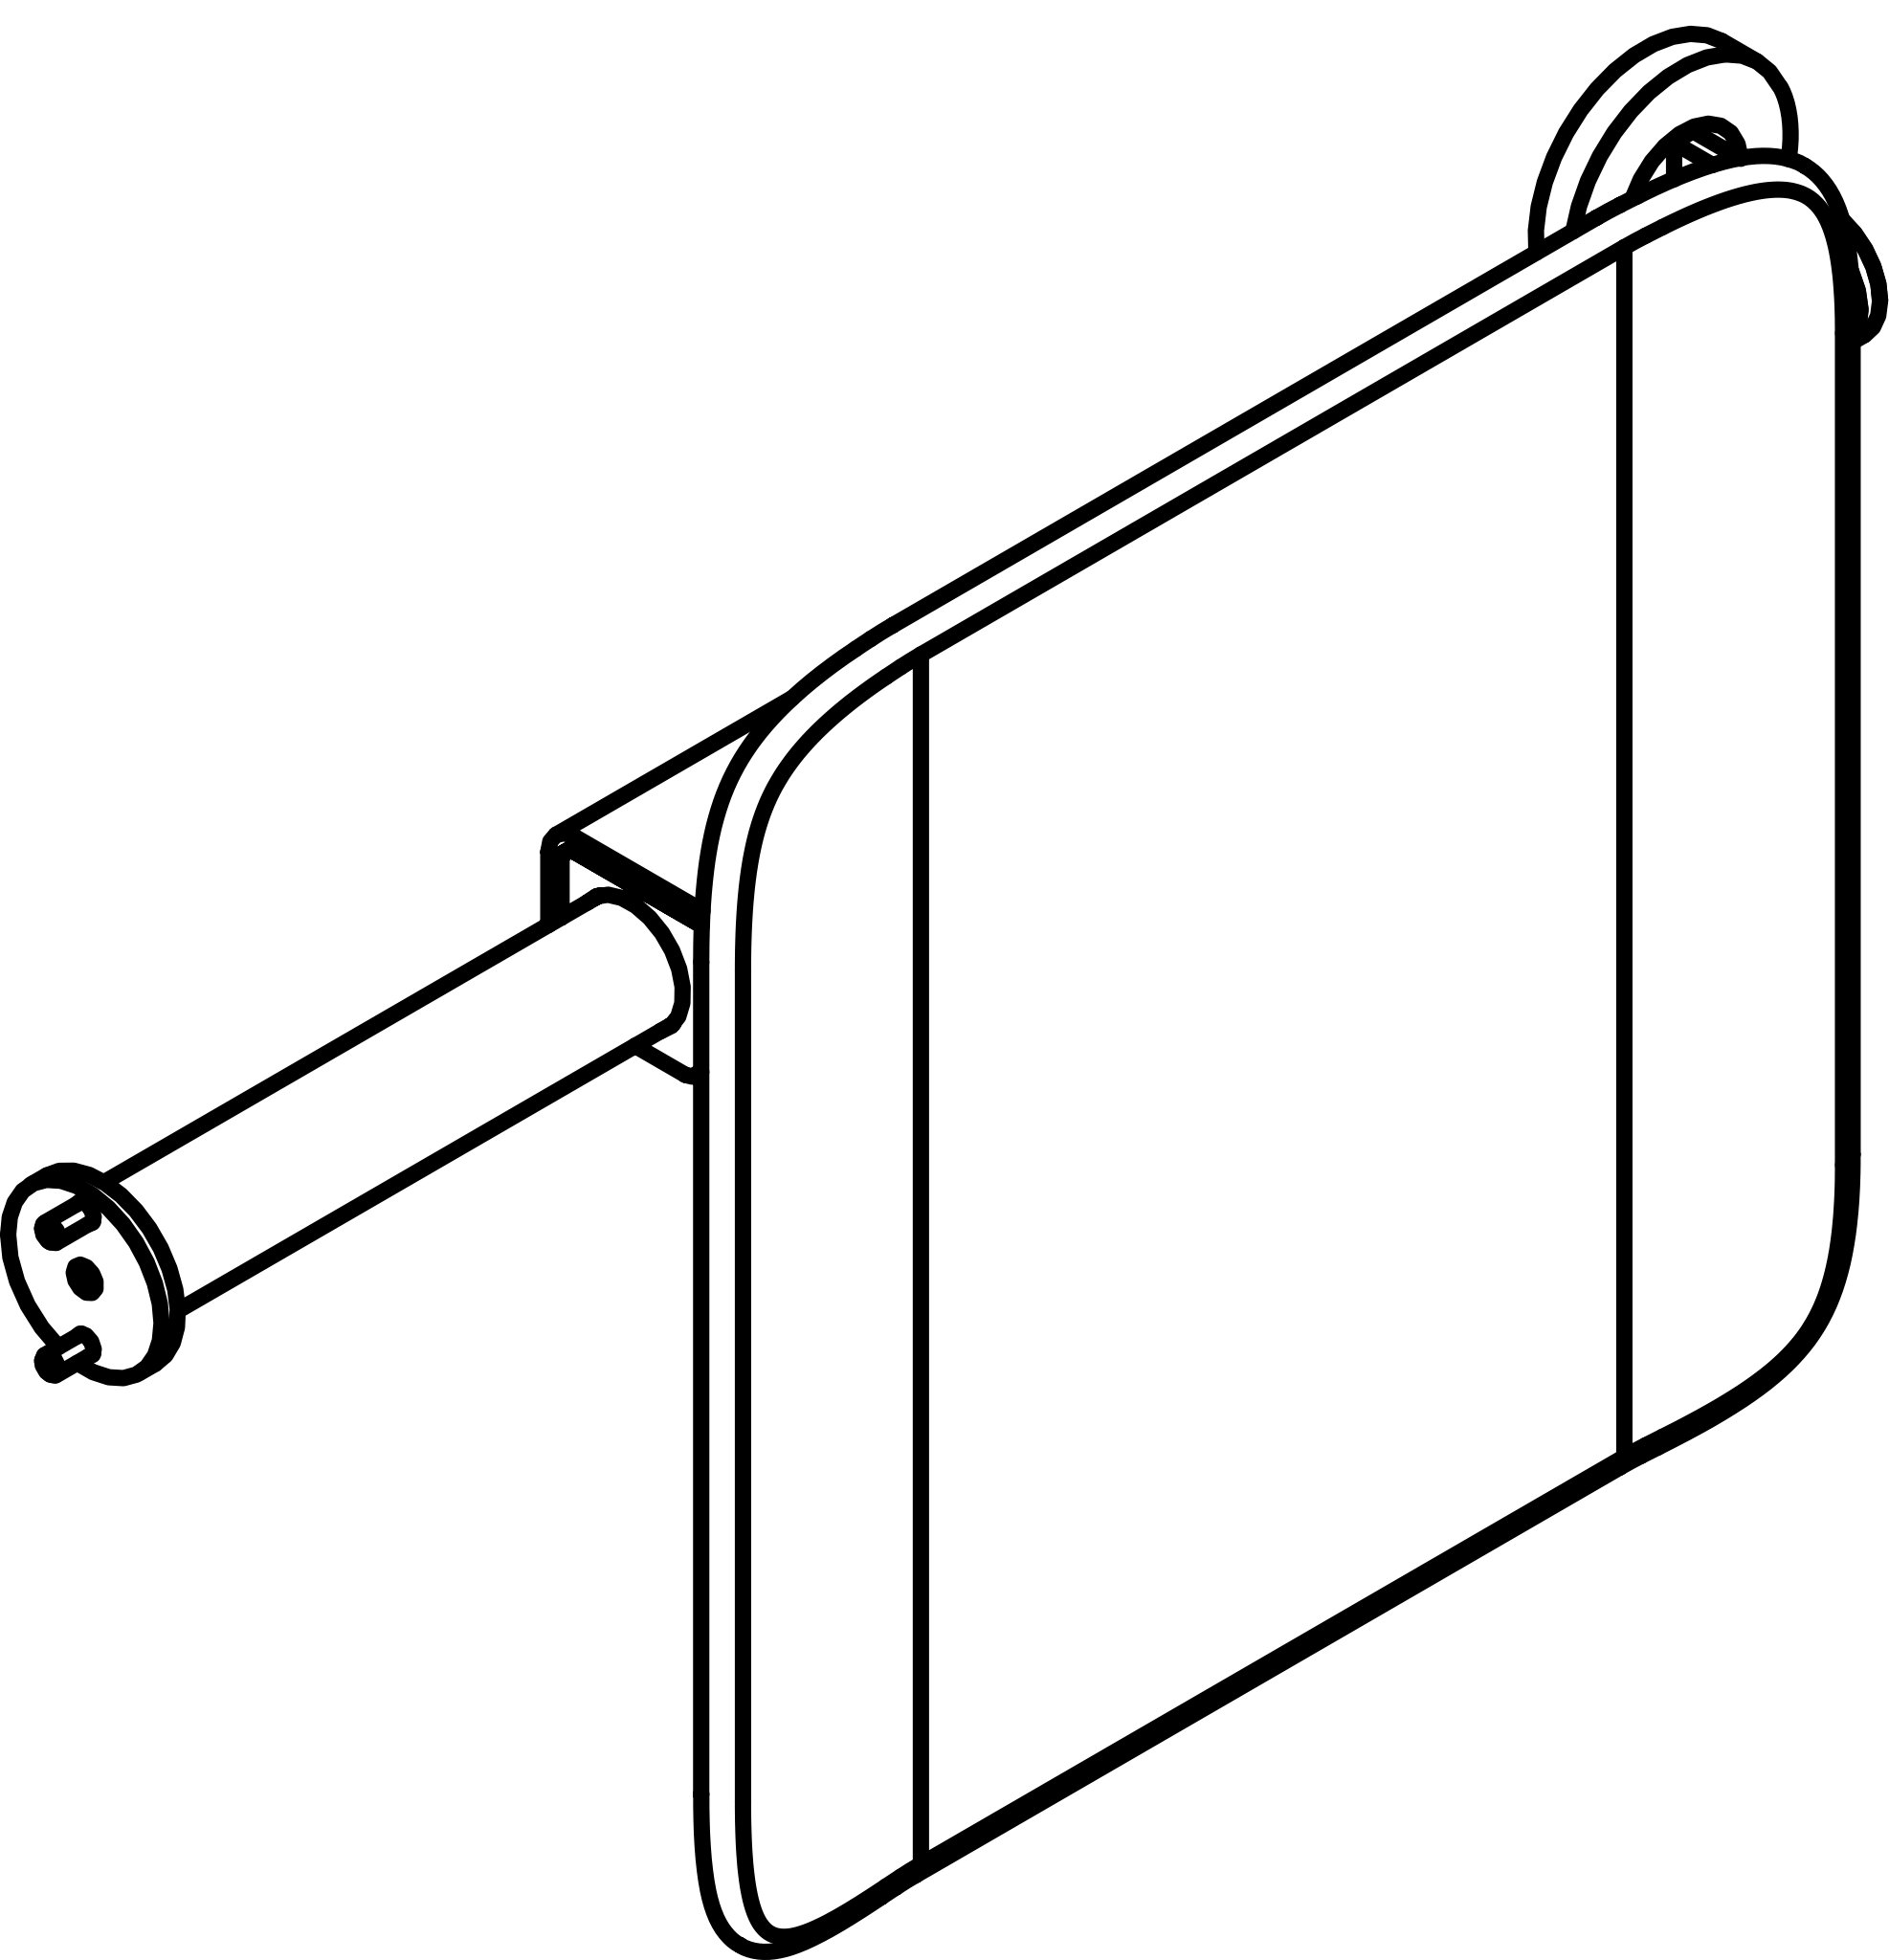 HEWI Rückenstütze „System 900“ 15 cm in Anthrazitgrau